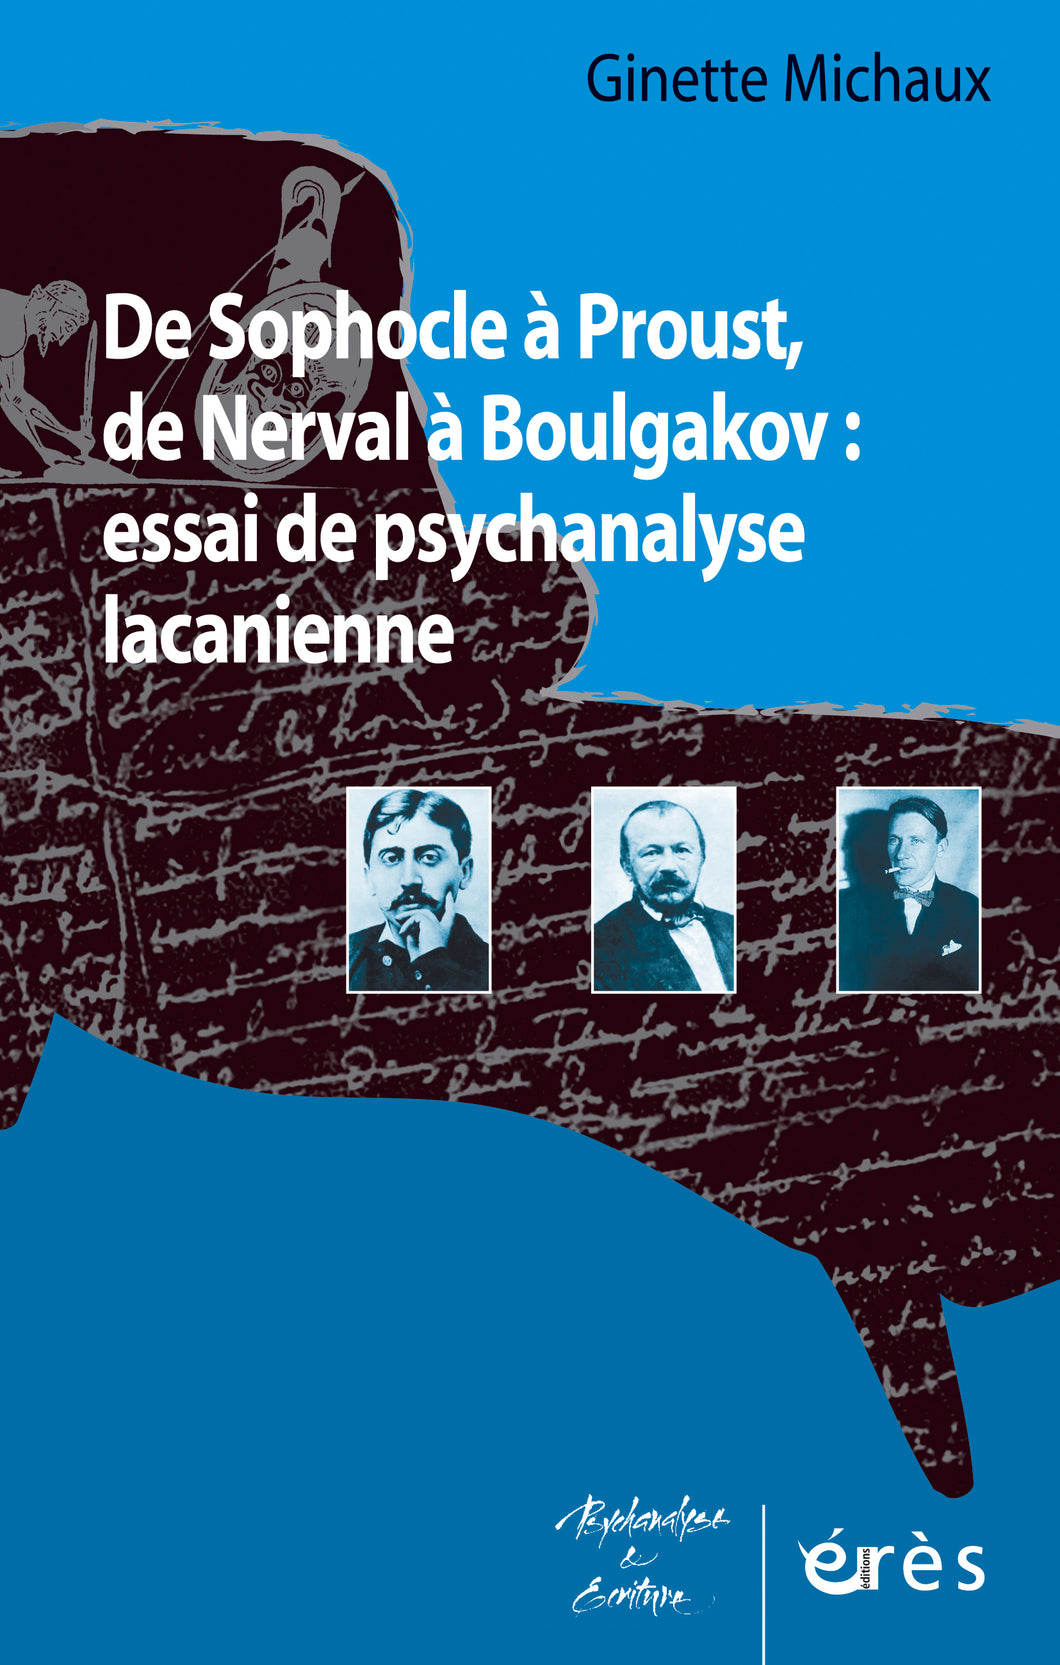 DE SOPHOCLE A PROUST, DE NERVAL A BOULGAKOV: ESSAI DE PSYCHANALYSE LACANIENNE